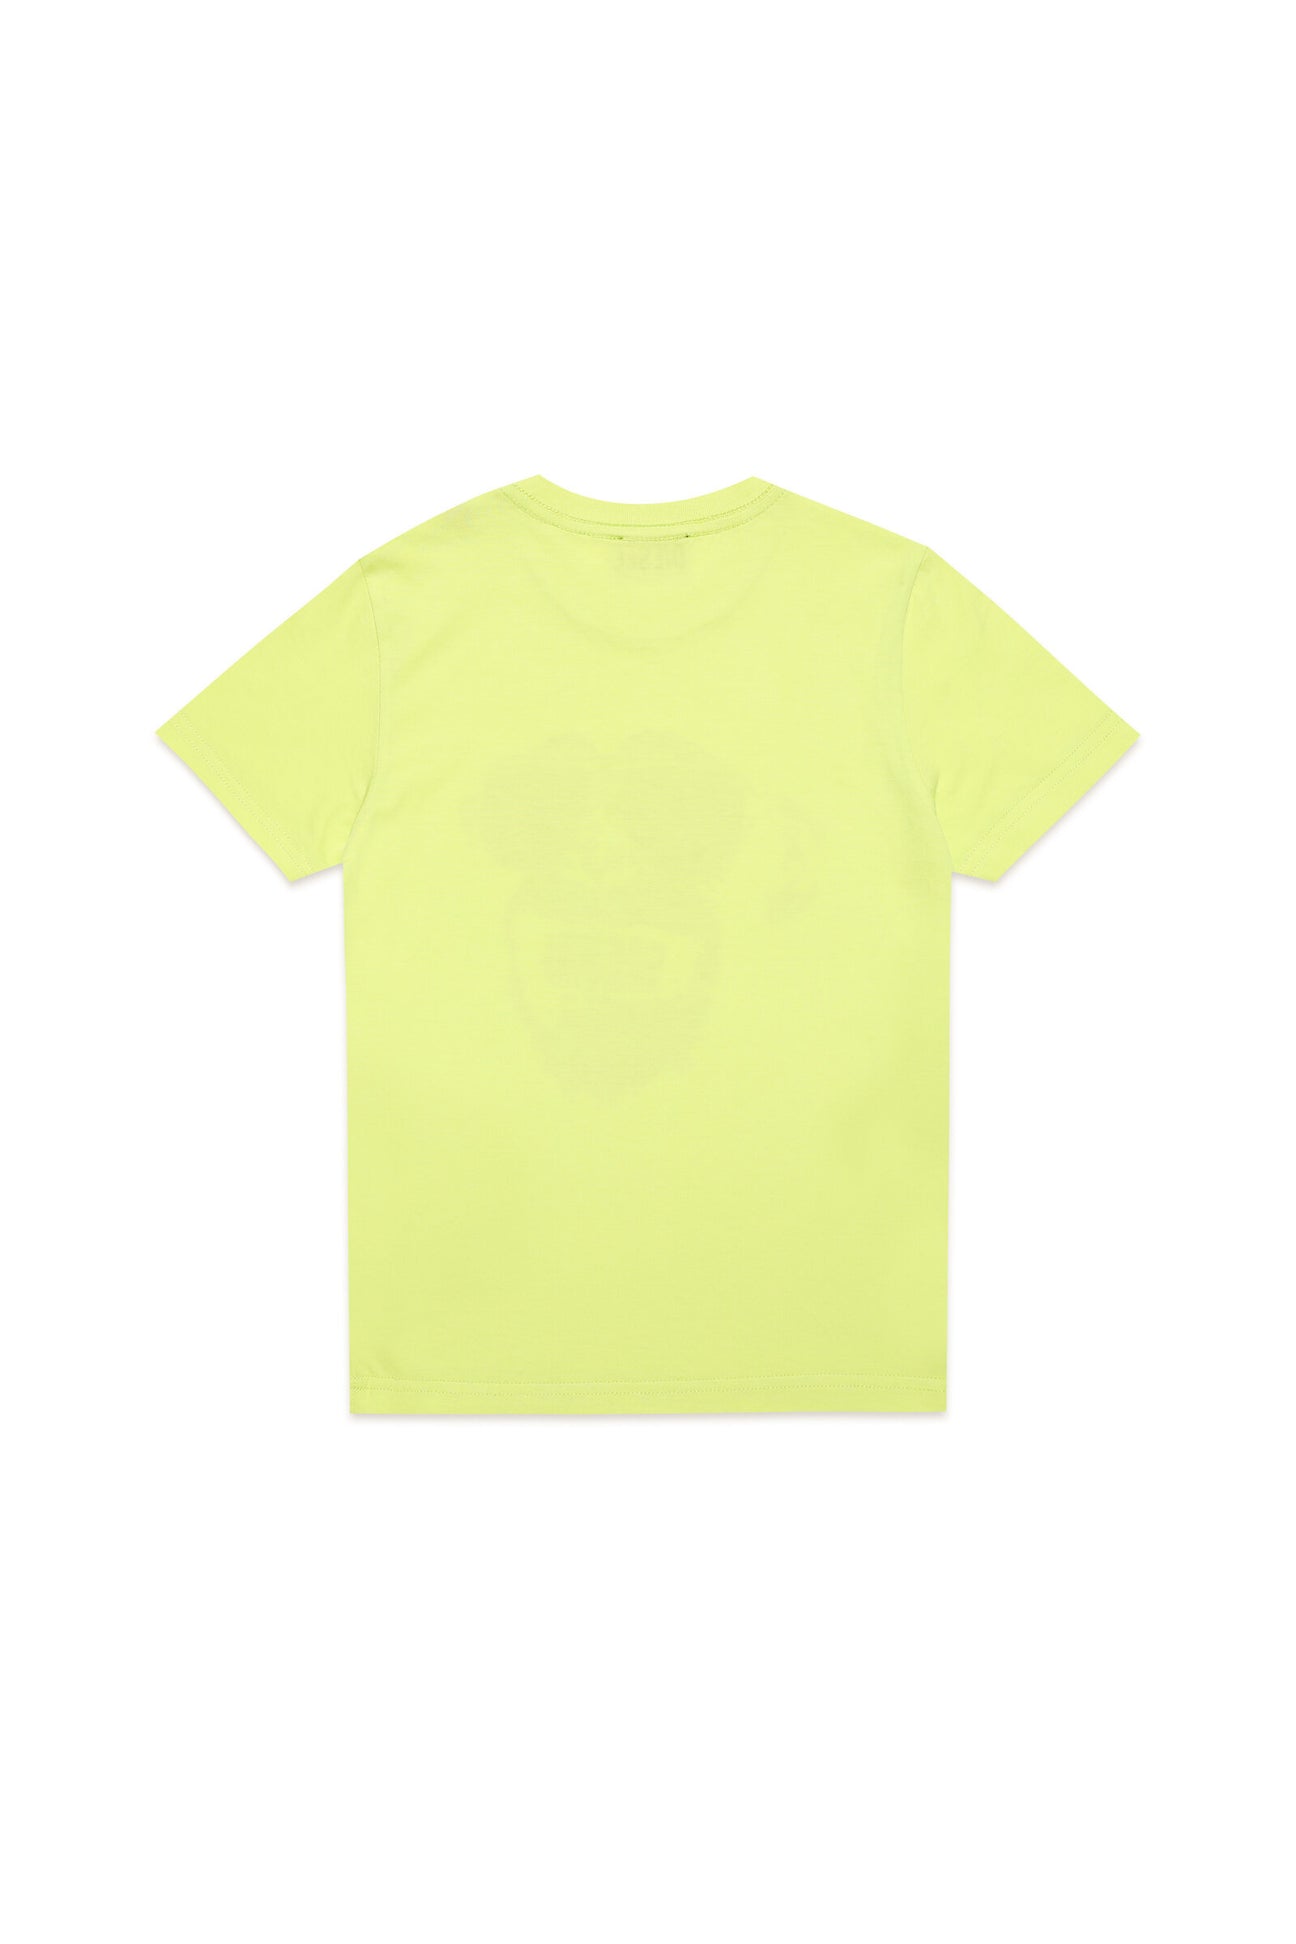 Yellow t-shirt with metallic effect Monkey print Yellow t-shirt with metallic effect Monkey print